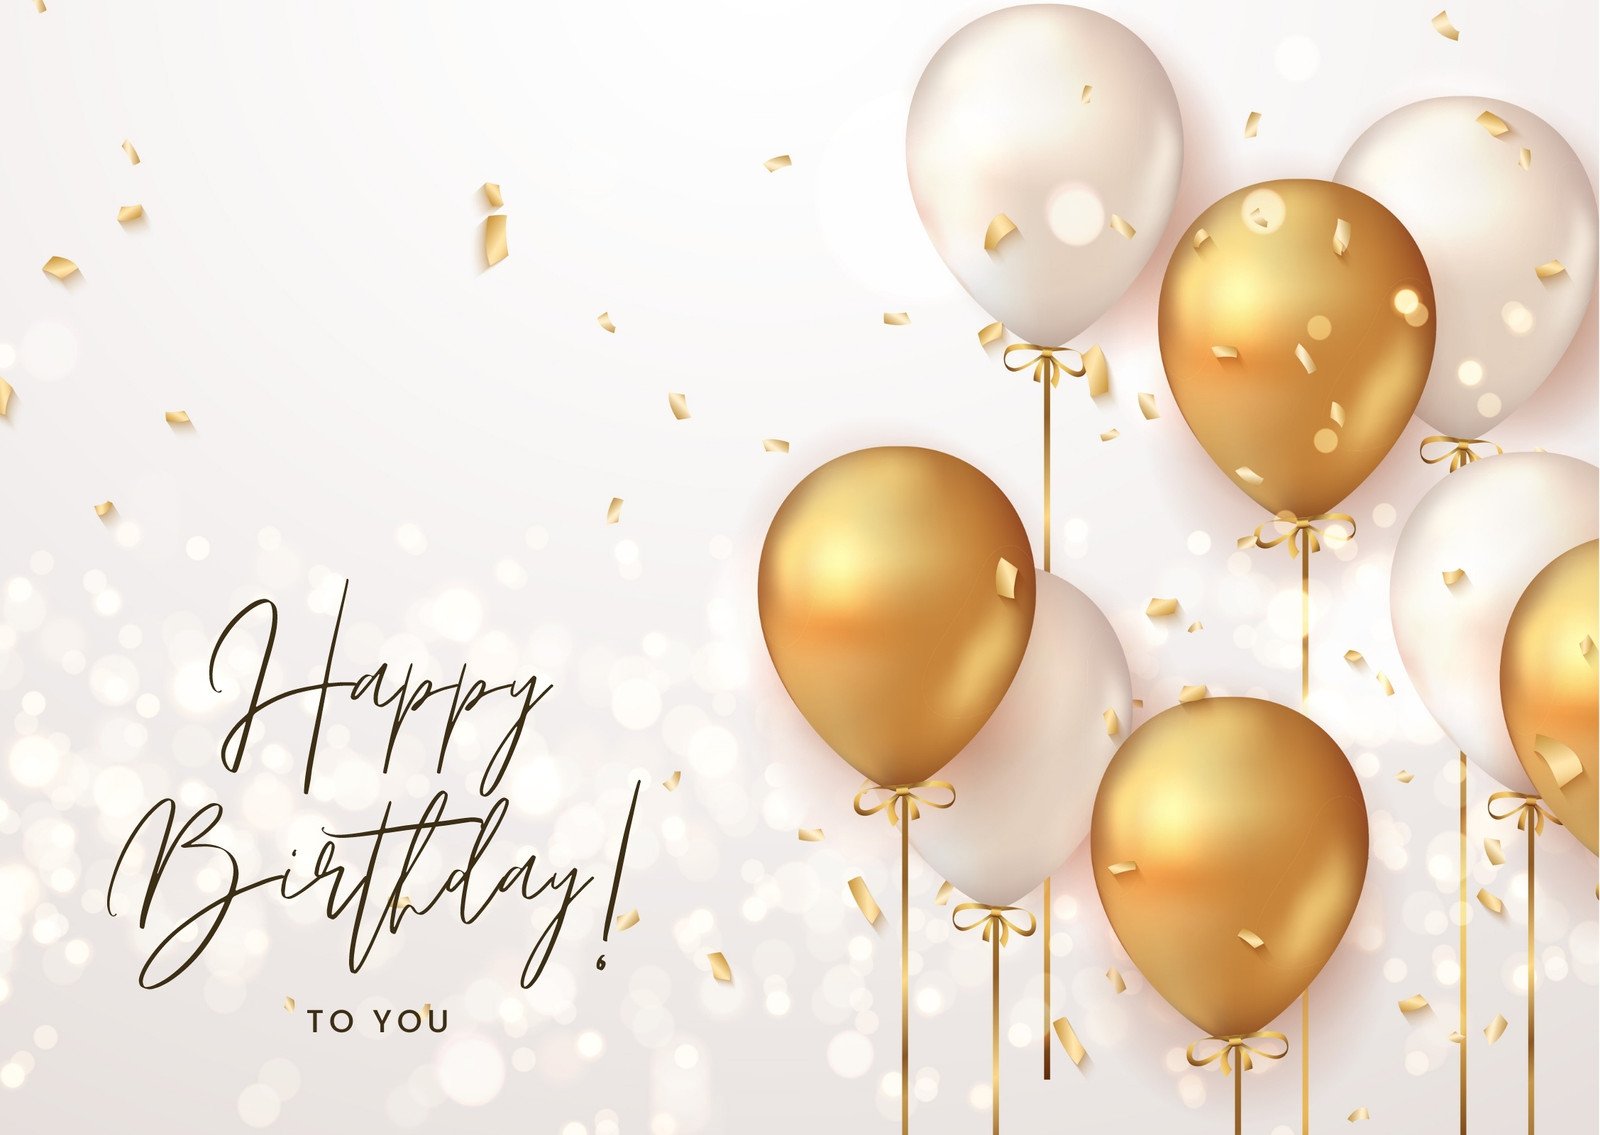 Chúc mừng sinh nhật lần thứ 60 của bạn! Chúng tôi muốn giúp bạn chuẩn bị cho ngày này bằng cách cung cấp các mẫu thiết kế thẻ sinh nhật có thể tùy chỉnh miễn phí. Hãy truy cập vào ảnh để xem thêm chi tiết và tìm kiếm một mẫu thiết kế ưng ý cho riêng mình.